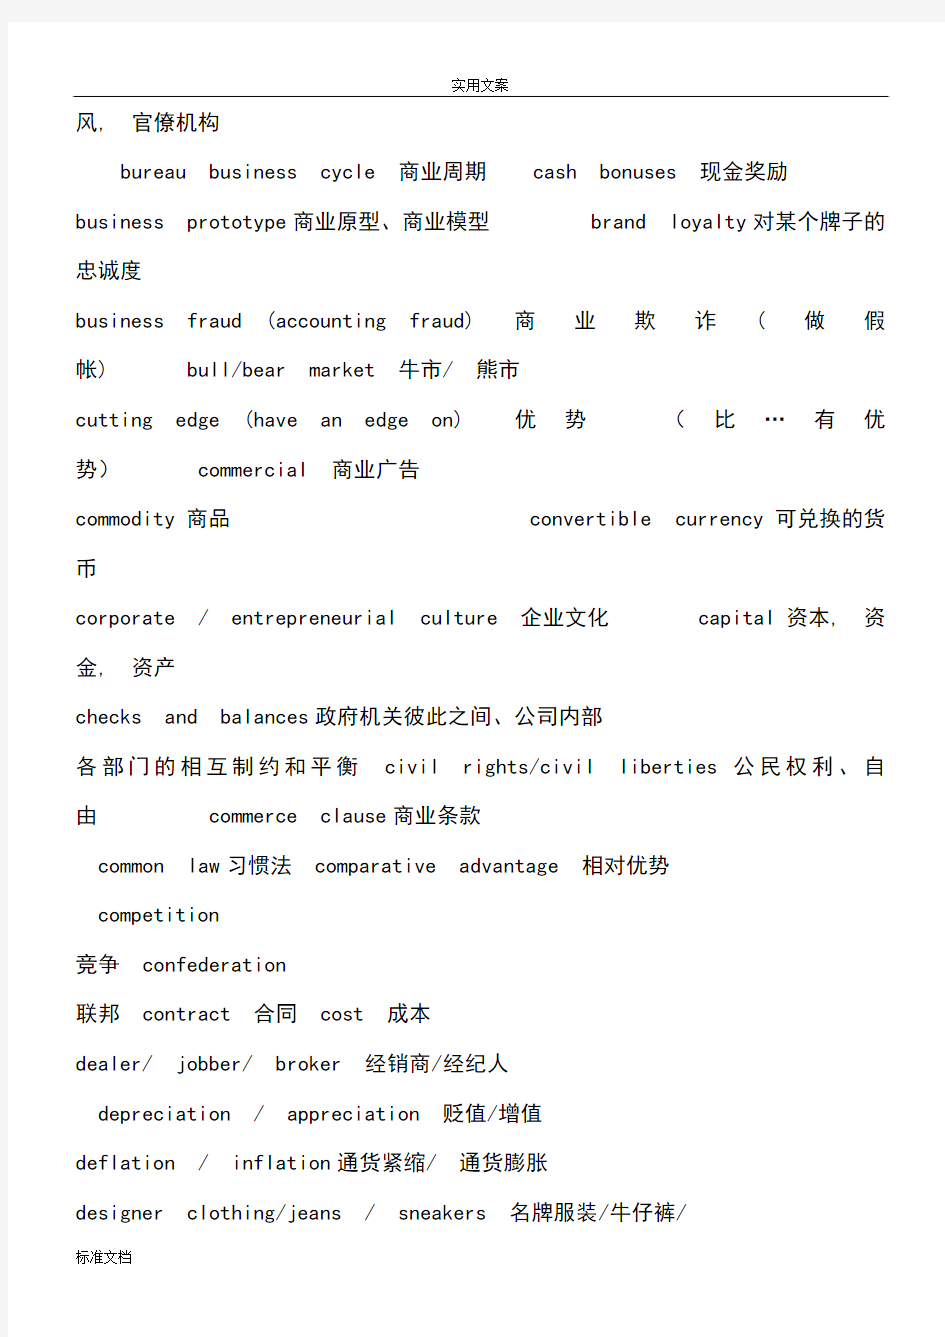 上海中级口译常考高频词汇分类汇总情况